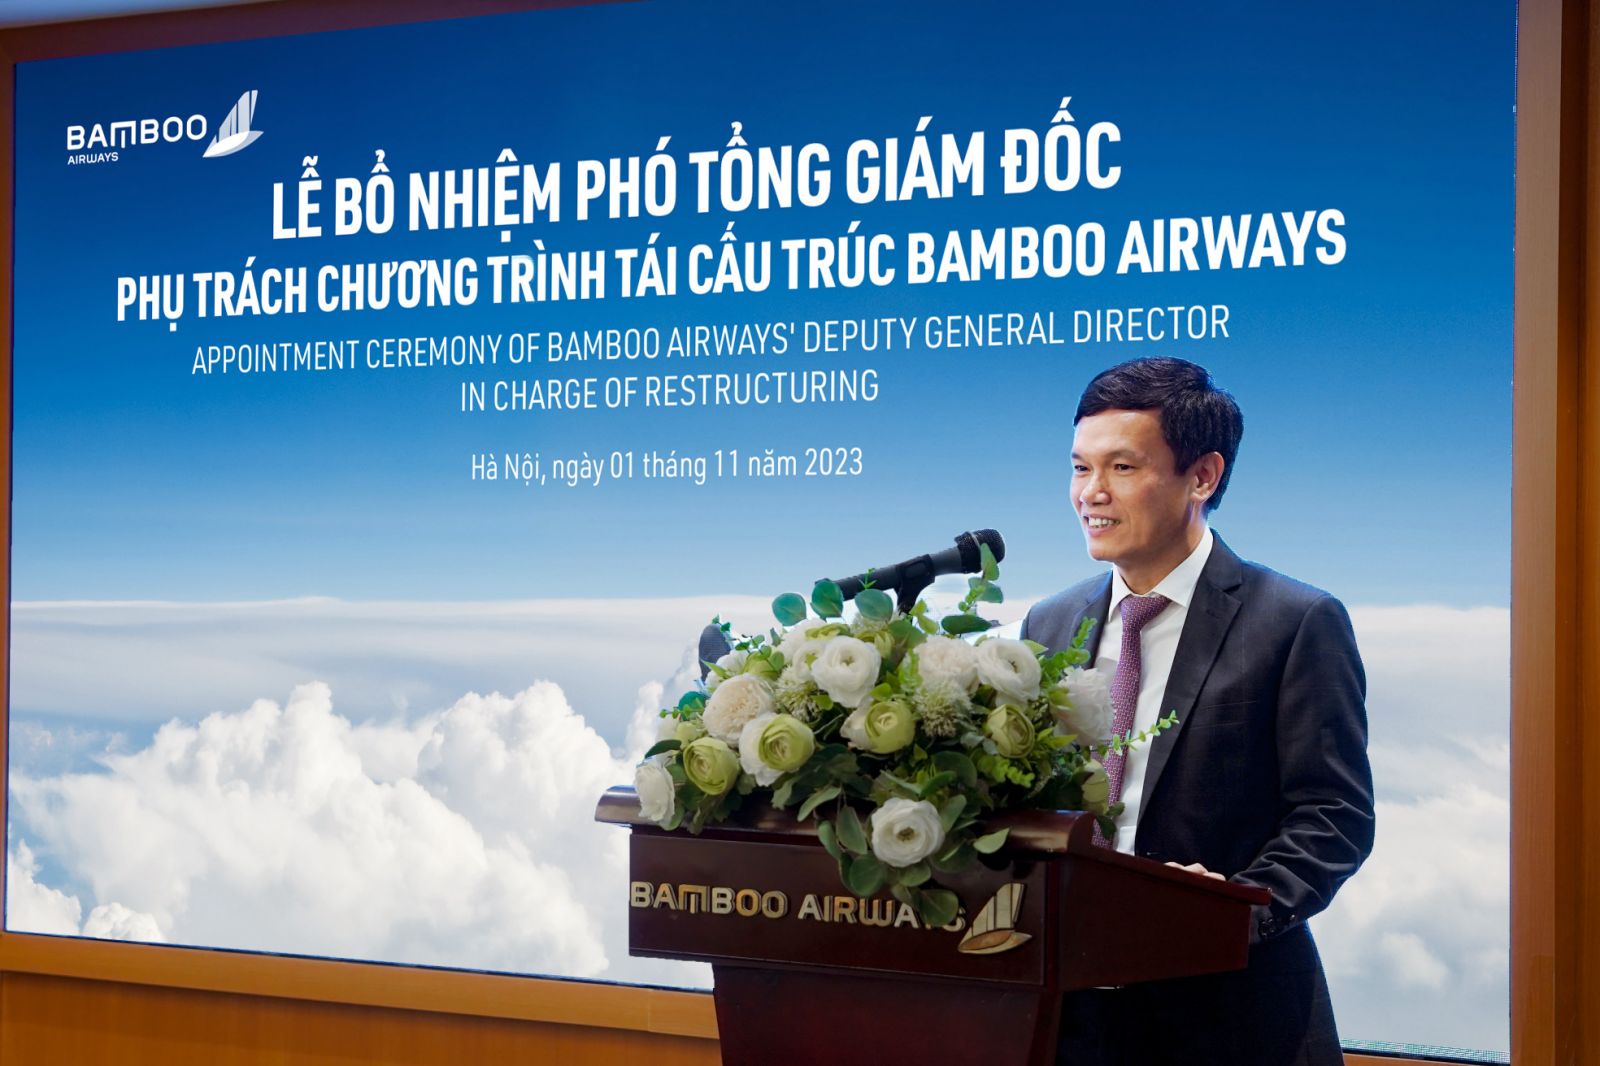 Bamboo Airways bất ngờ bổ nhiệm Phó Tổng giám đốc mới - Ảnh 1.